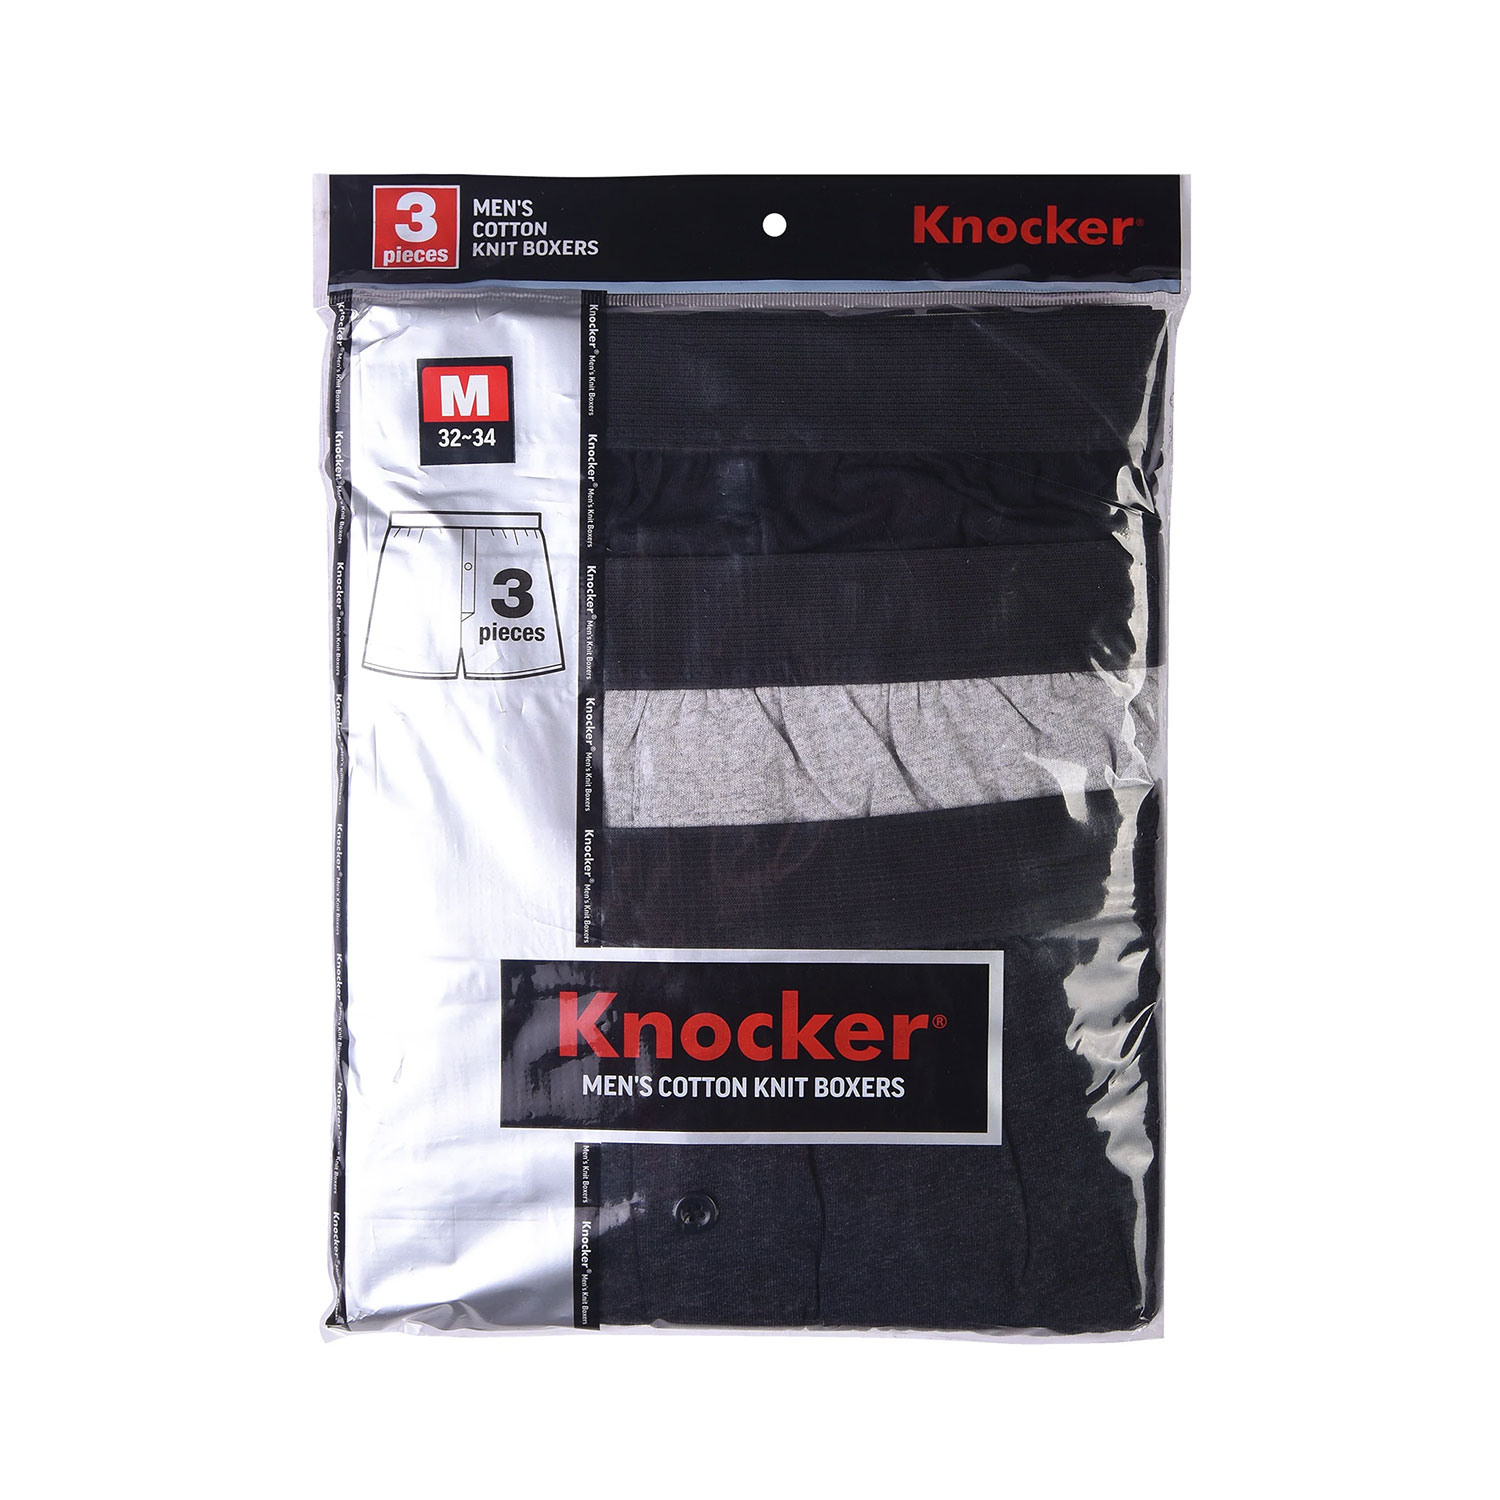 6 Pack Knocker Men's Cotton Knit Boxers